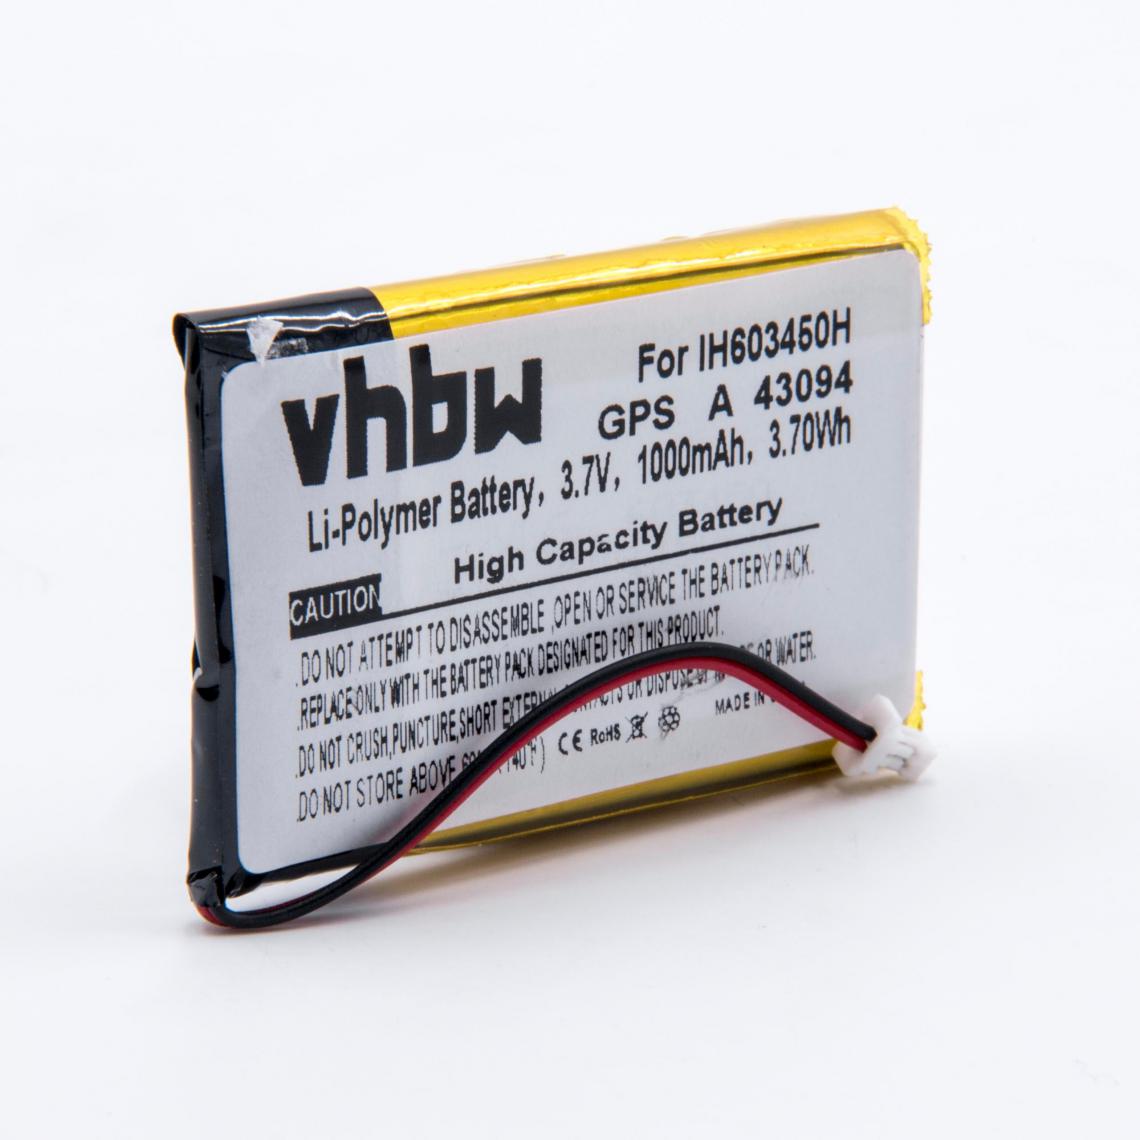 Vhbw - vhbw Li-Polymère Batterie 1000mAh (3.7V) pour GPS, système de navigation Izzo Swami 4000, 4000 Golf, GPSA43094, A43094 comme H603450H. - Autre appareil de mesure